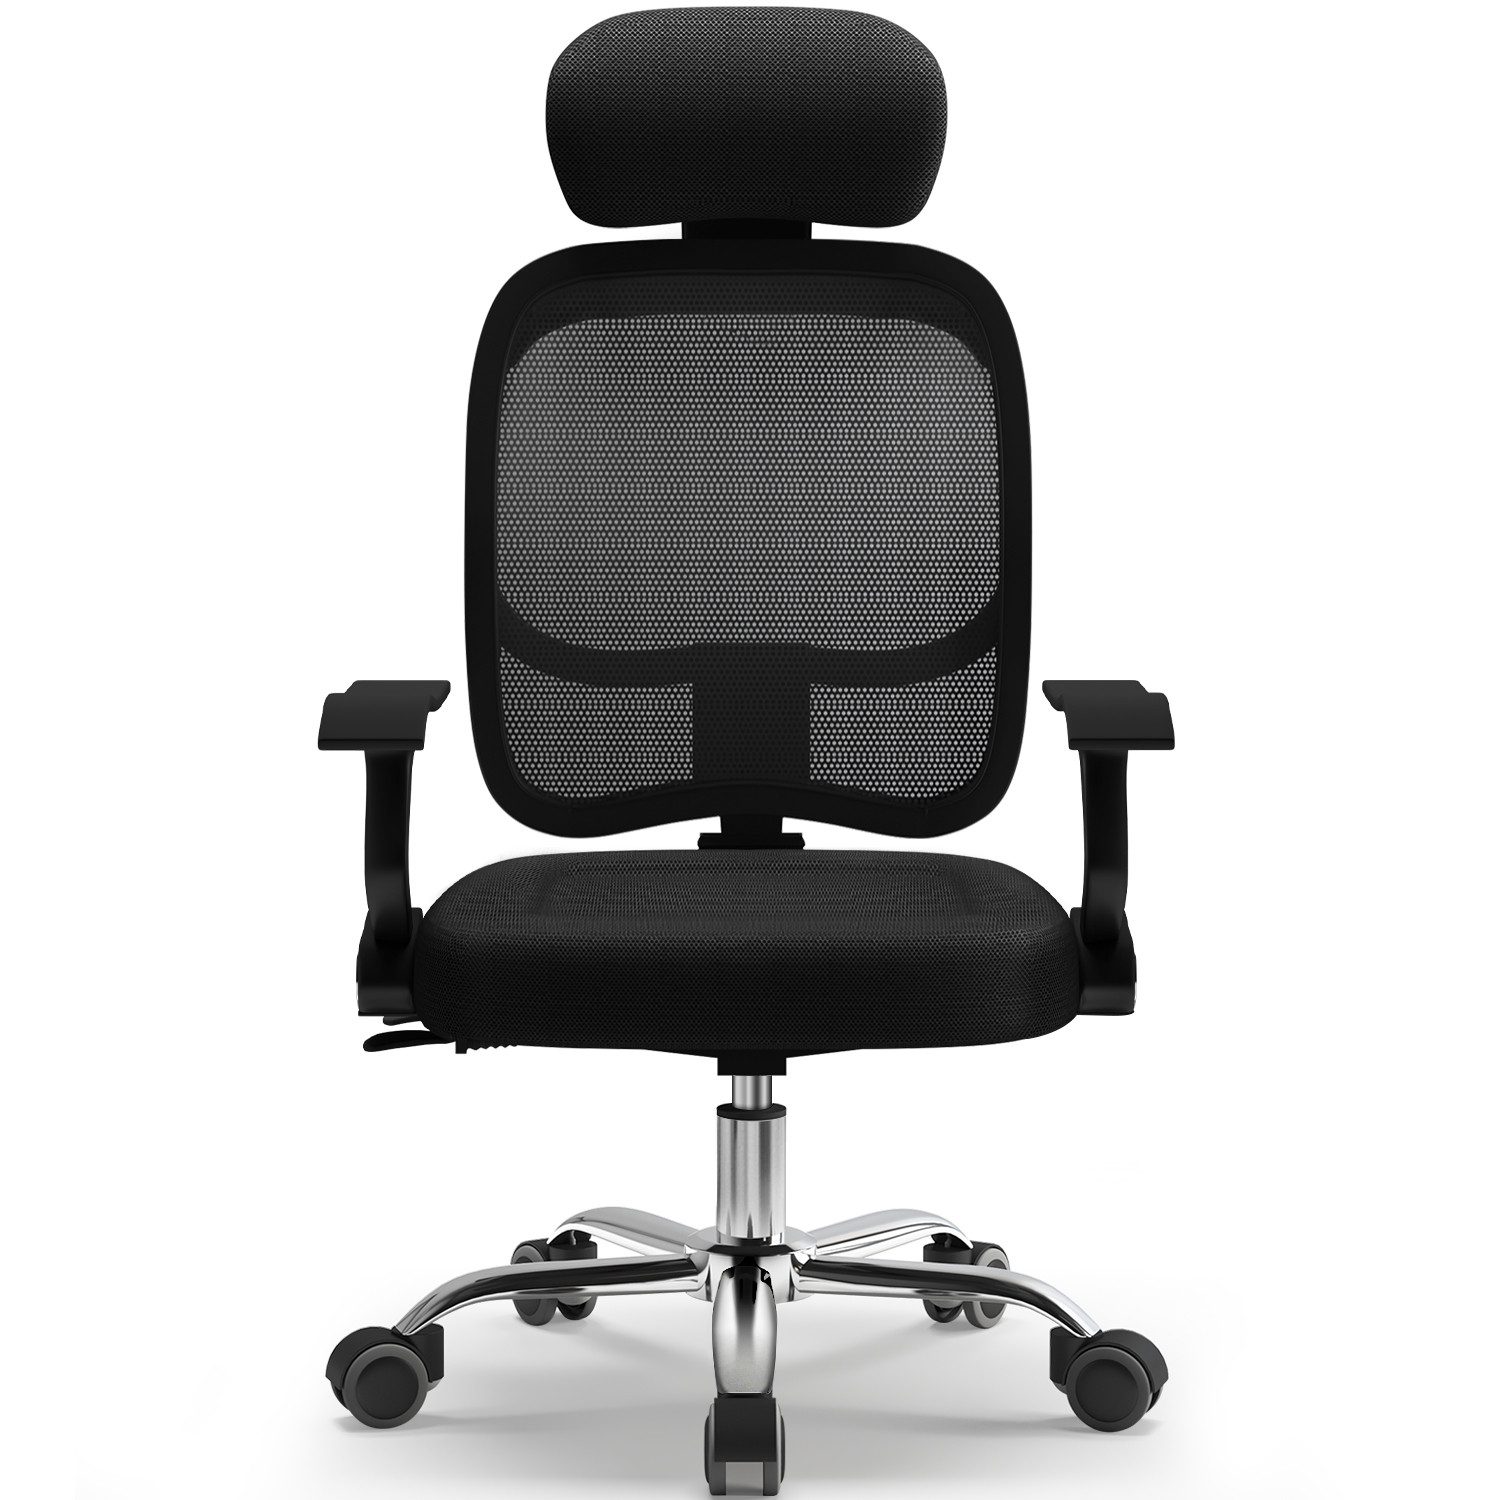 Lexzurn Bürostuhl Bürostuhl, Schreibtischstuhl Bürostuhl ergonomisch (Drehstuhl mit Verstellbarer Kopfstütze, höhenverstellbare Rückenlehne, Bürostuhl Wippfunktion bis 135°, Atmungsaktiv), Chefsessel 130 kg Belastbarkeit